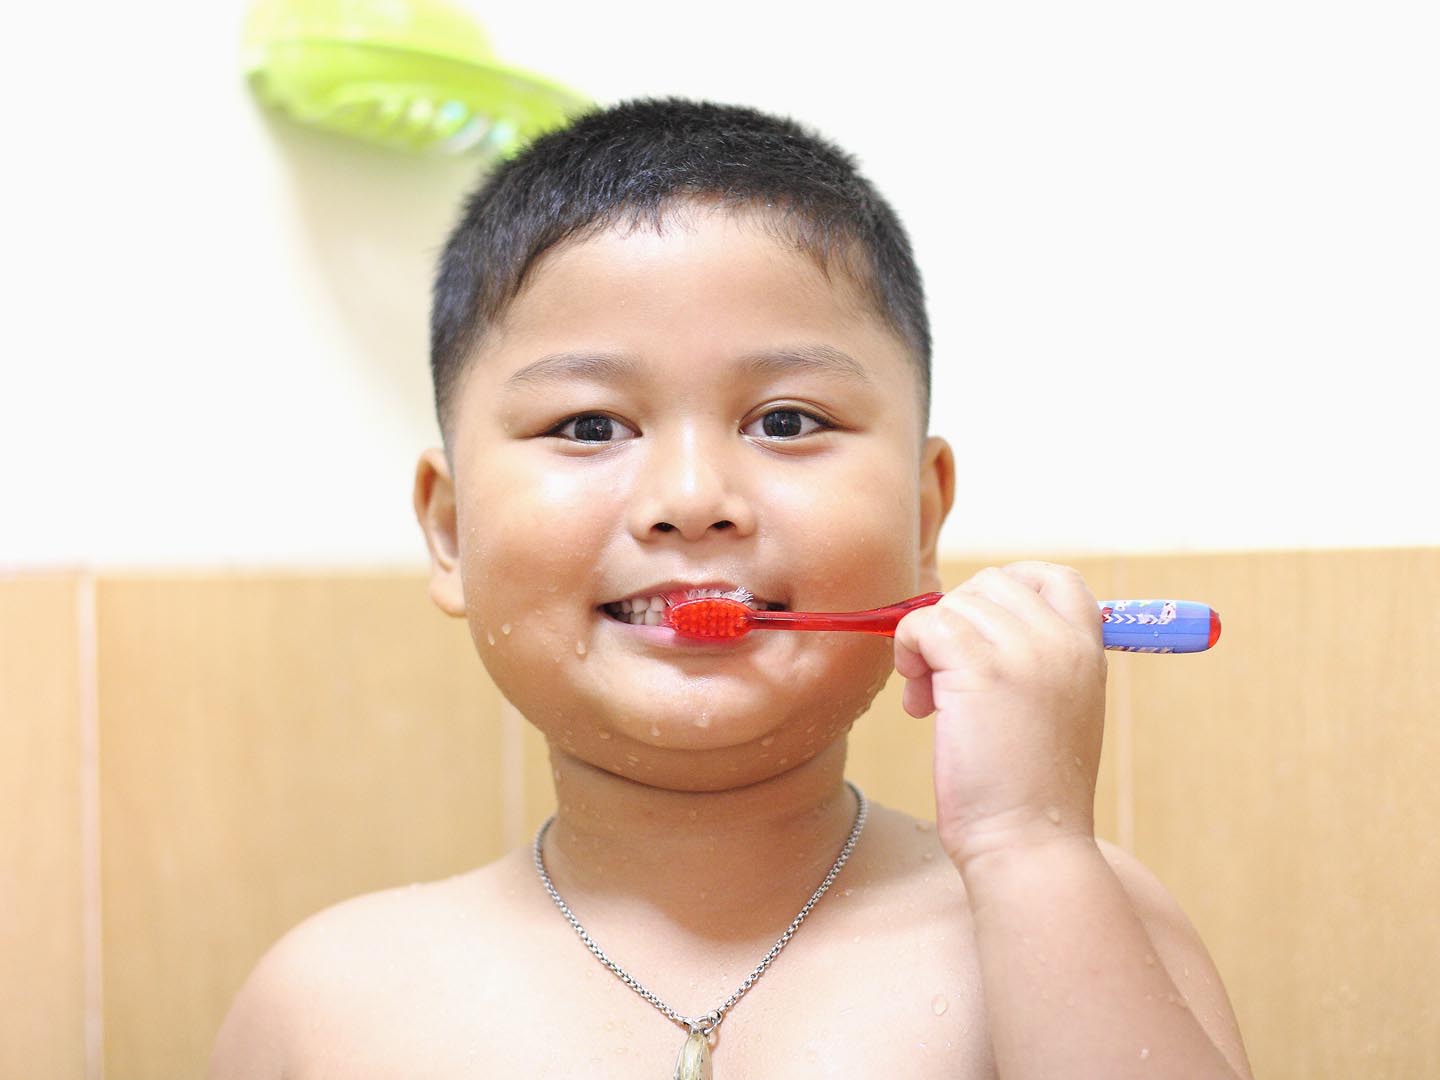 Little boy brushing teeth. Personal hygiene.